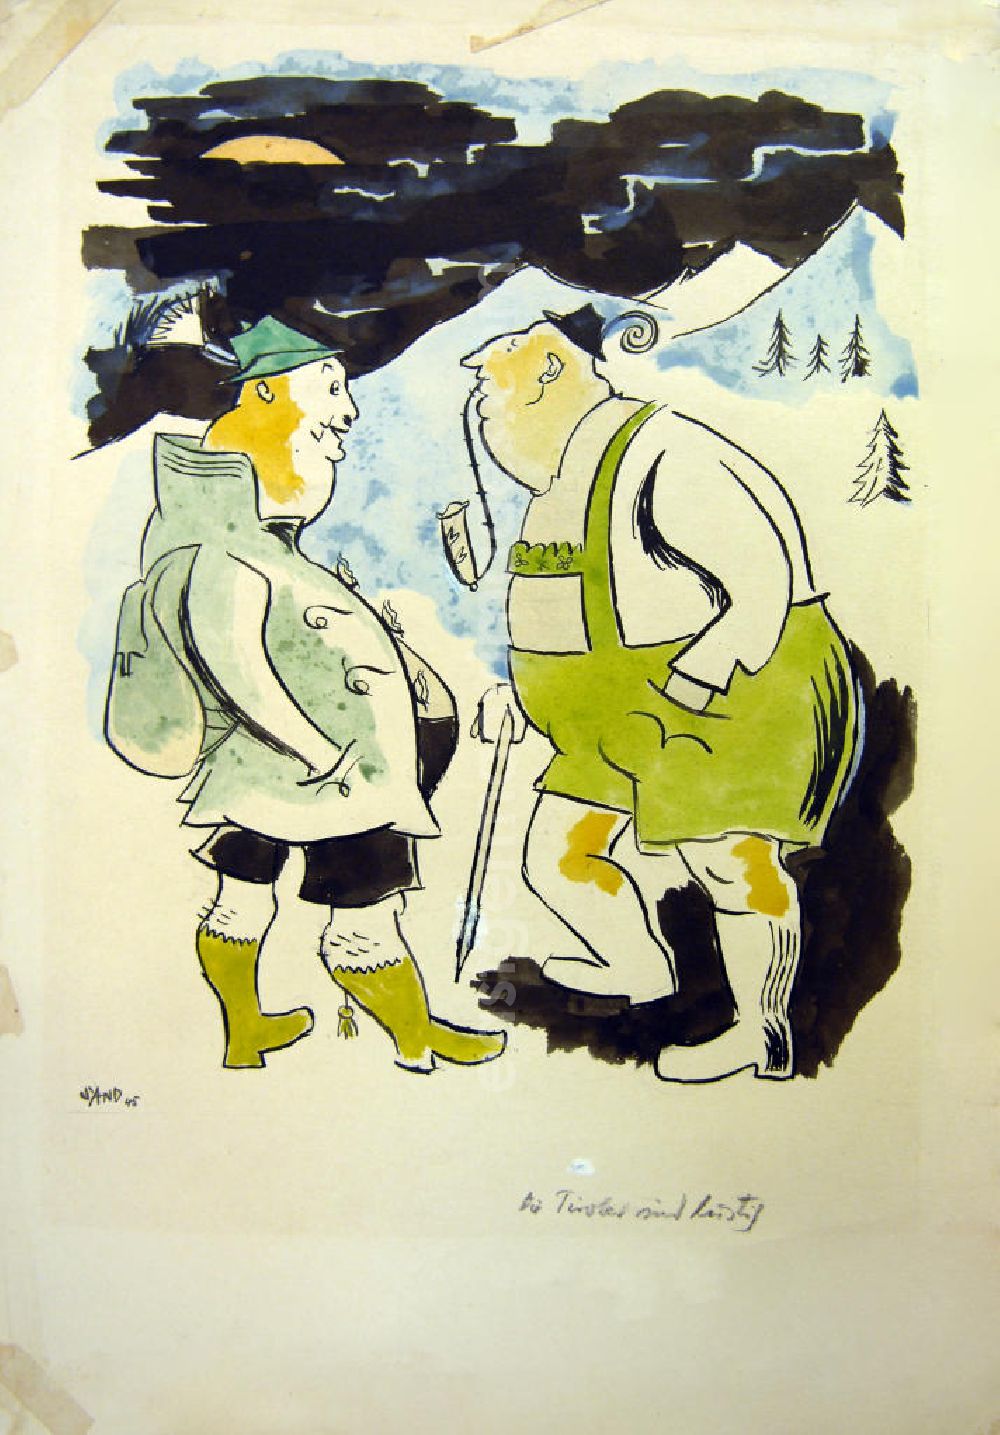 GDR picture archive: Berlin - Zeichnung von Herbert Sandberg Die Tiroler sind lustig aus dem Jahr 1945, 21,5x29,